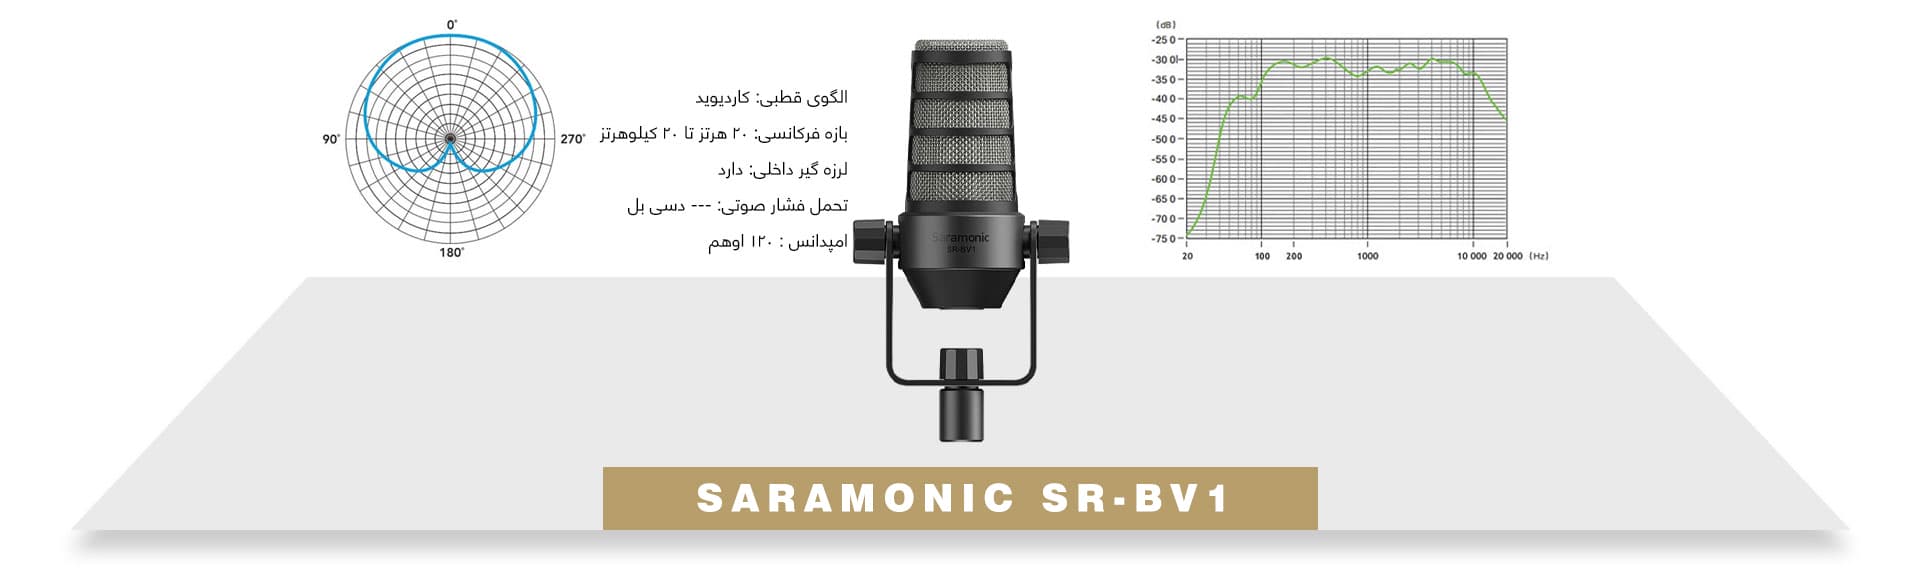 میکروفون داینامیک پادکست برادکست Saramonic SR-BV1